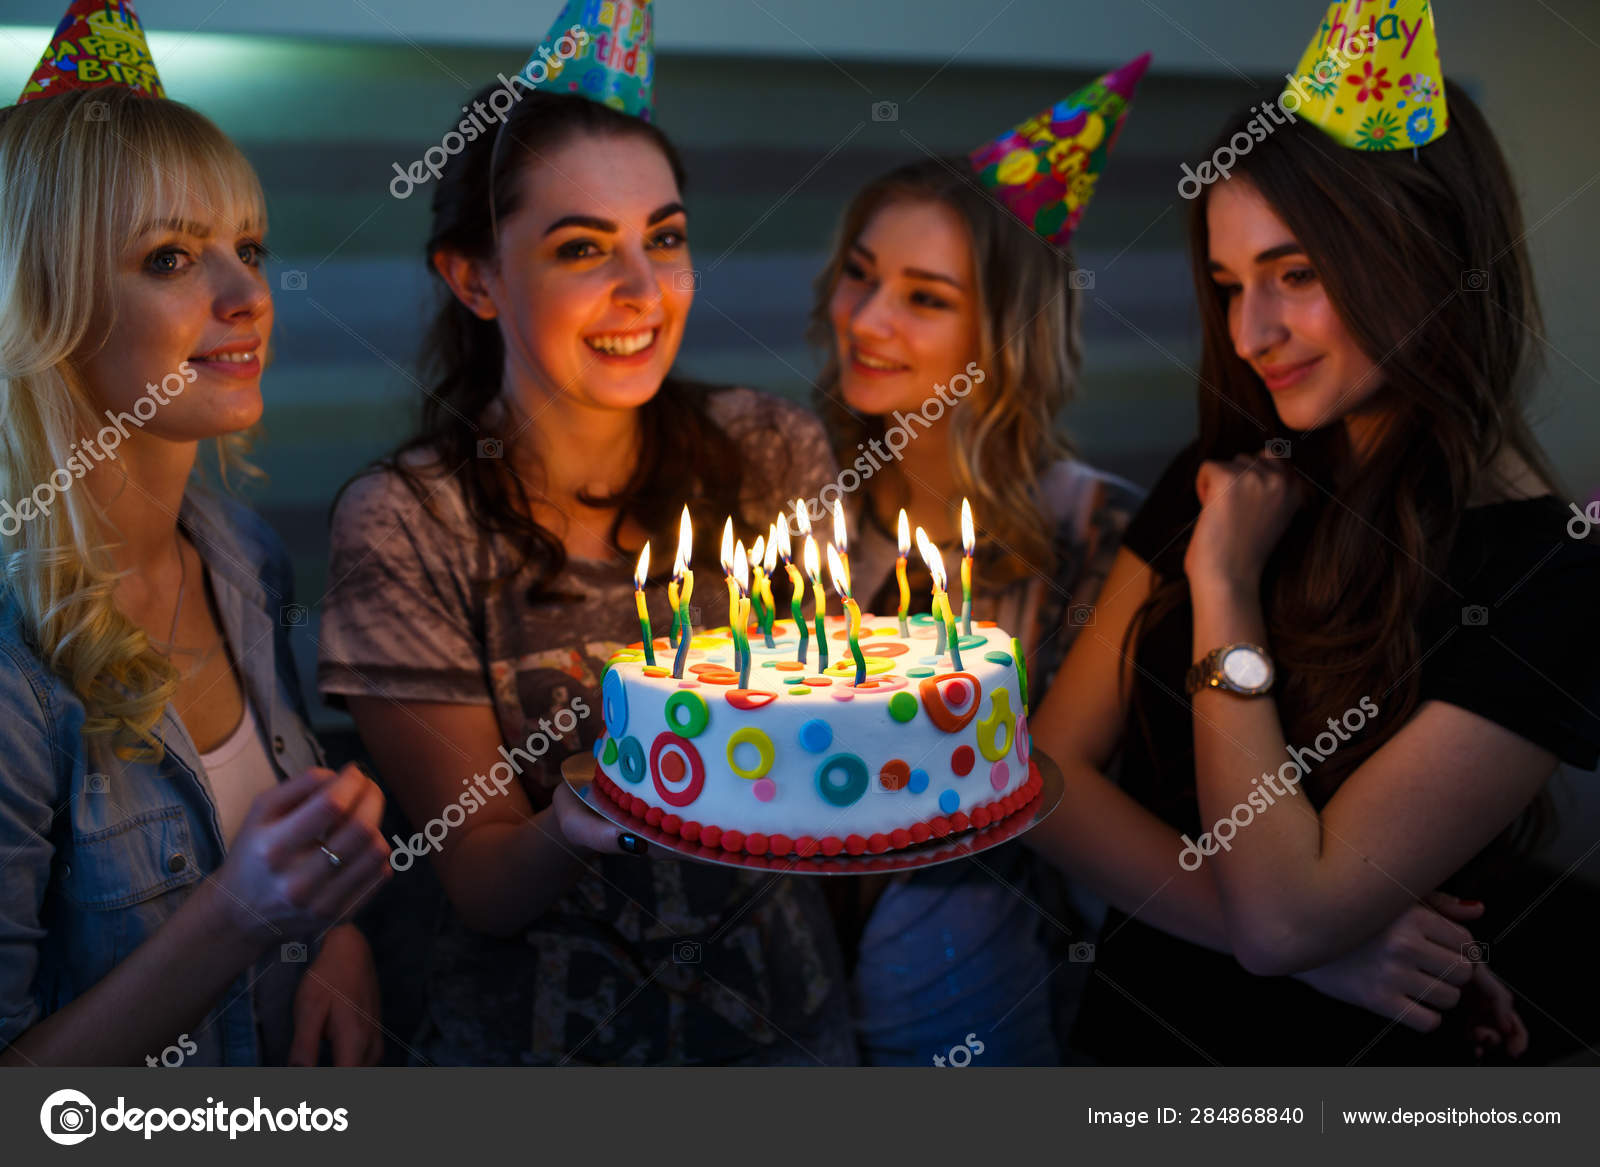 Teenage Girl Balloons Birthday Cake Posing Stock Photo 1506545147 |  Shutterstock